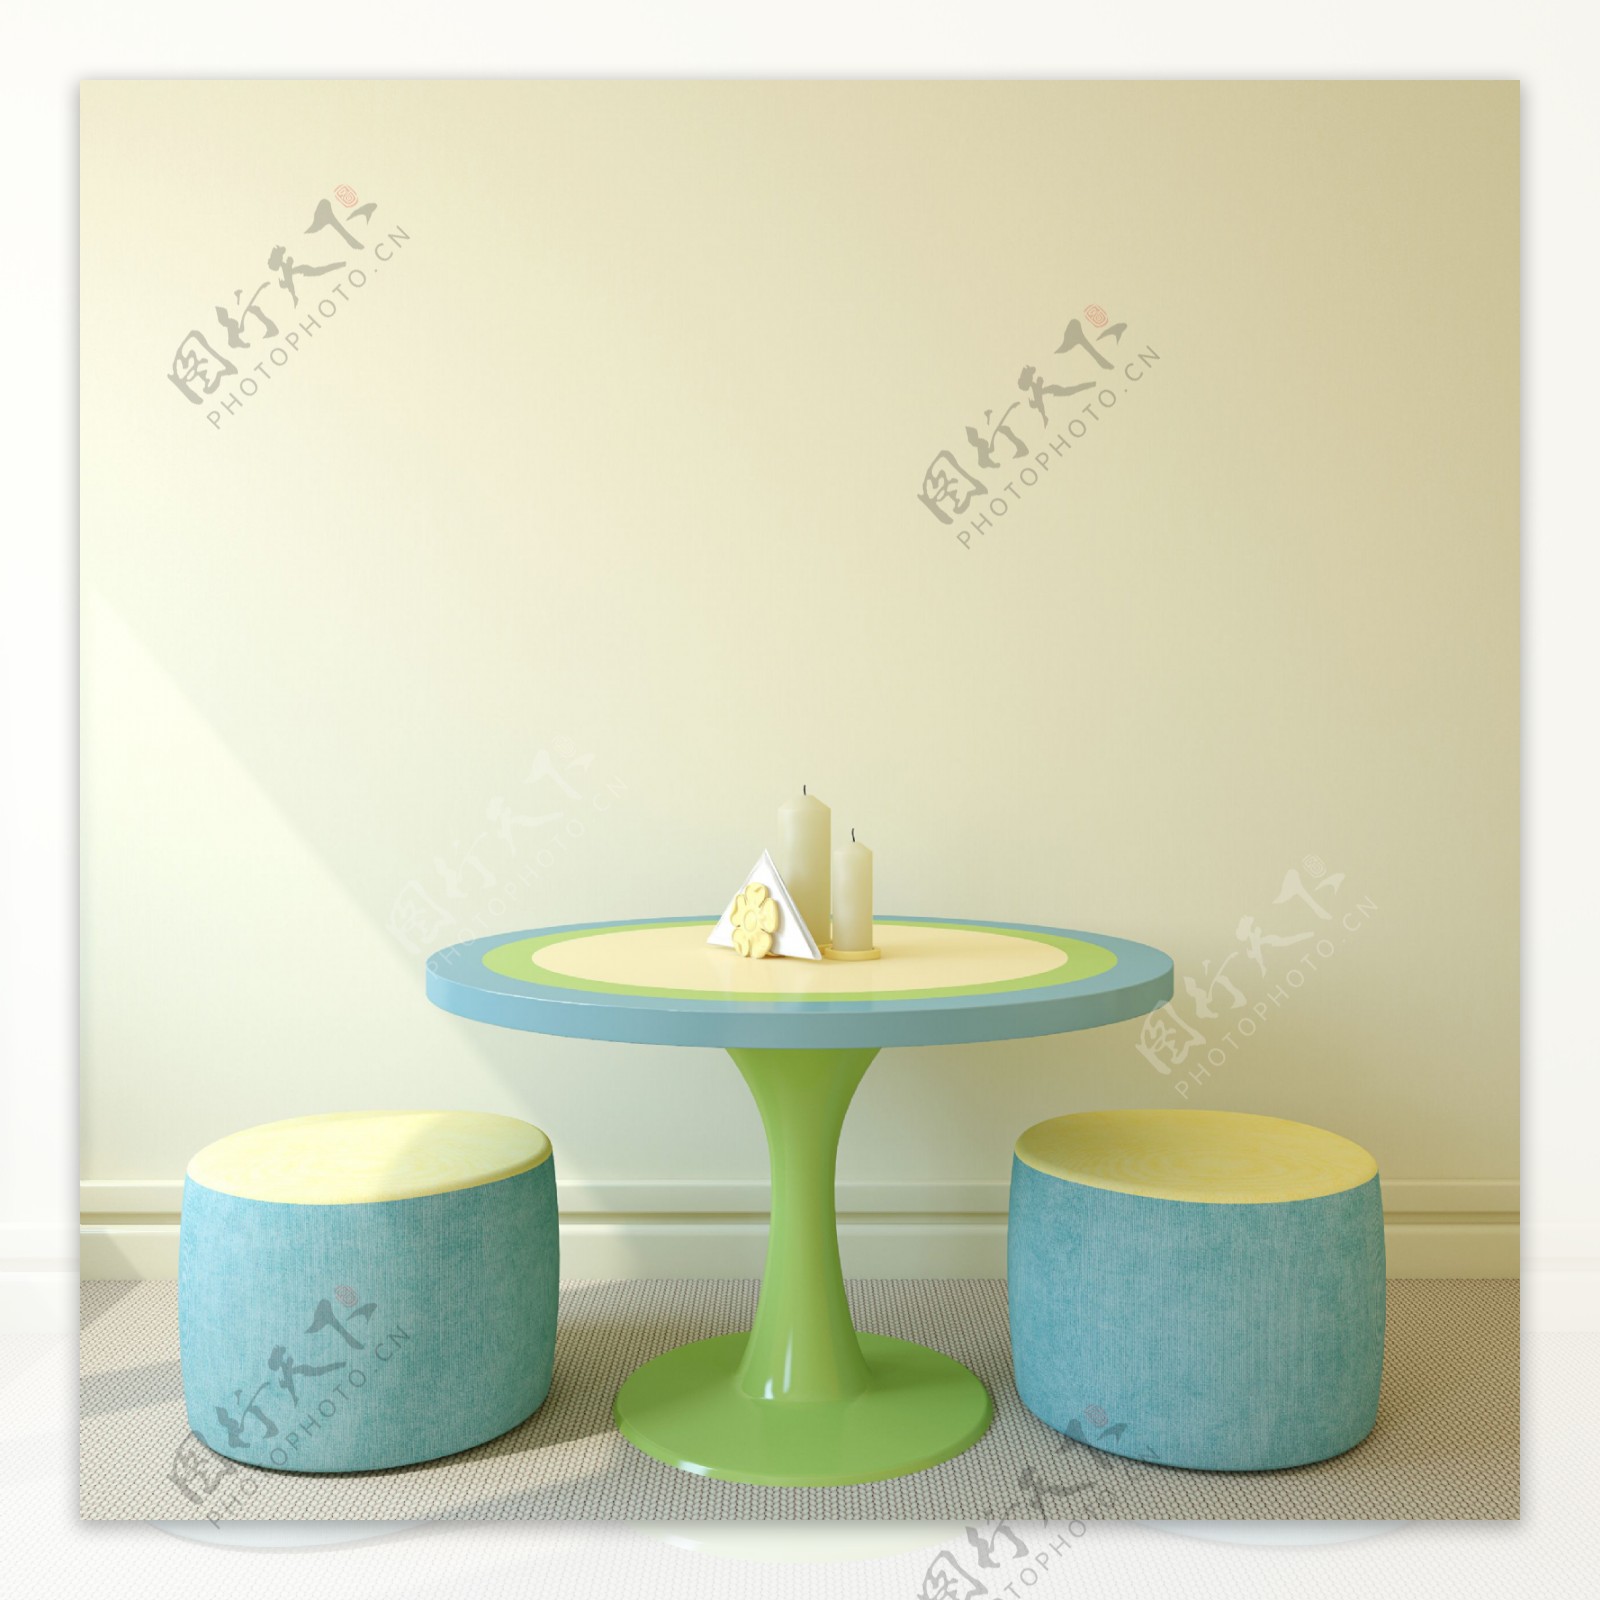 蓝色圆桌与凳子